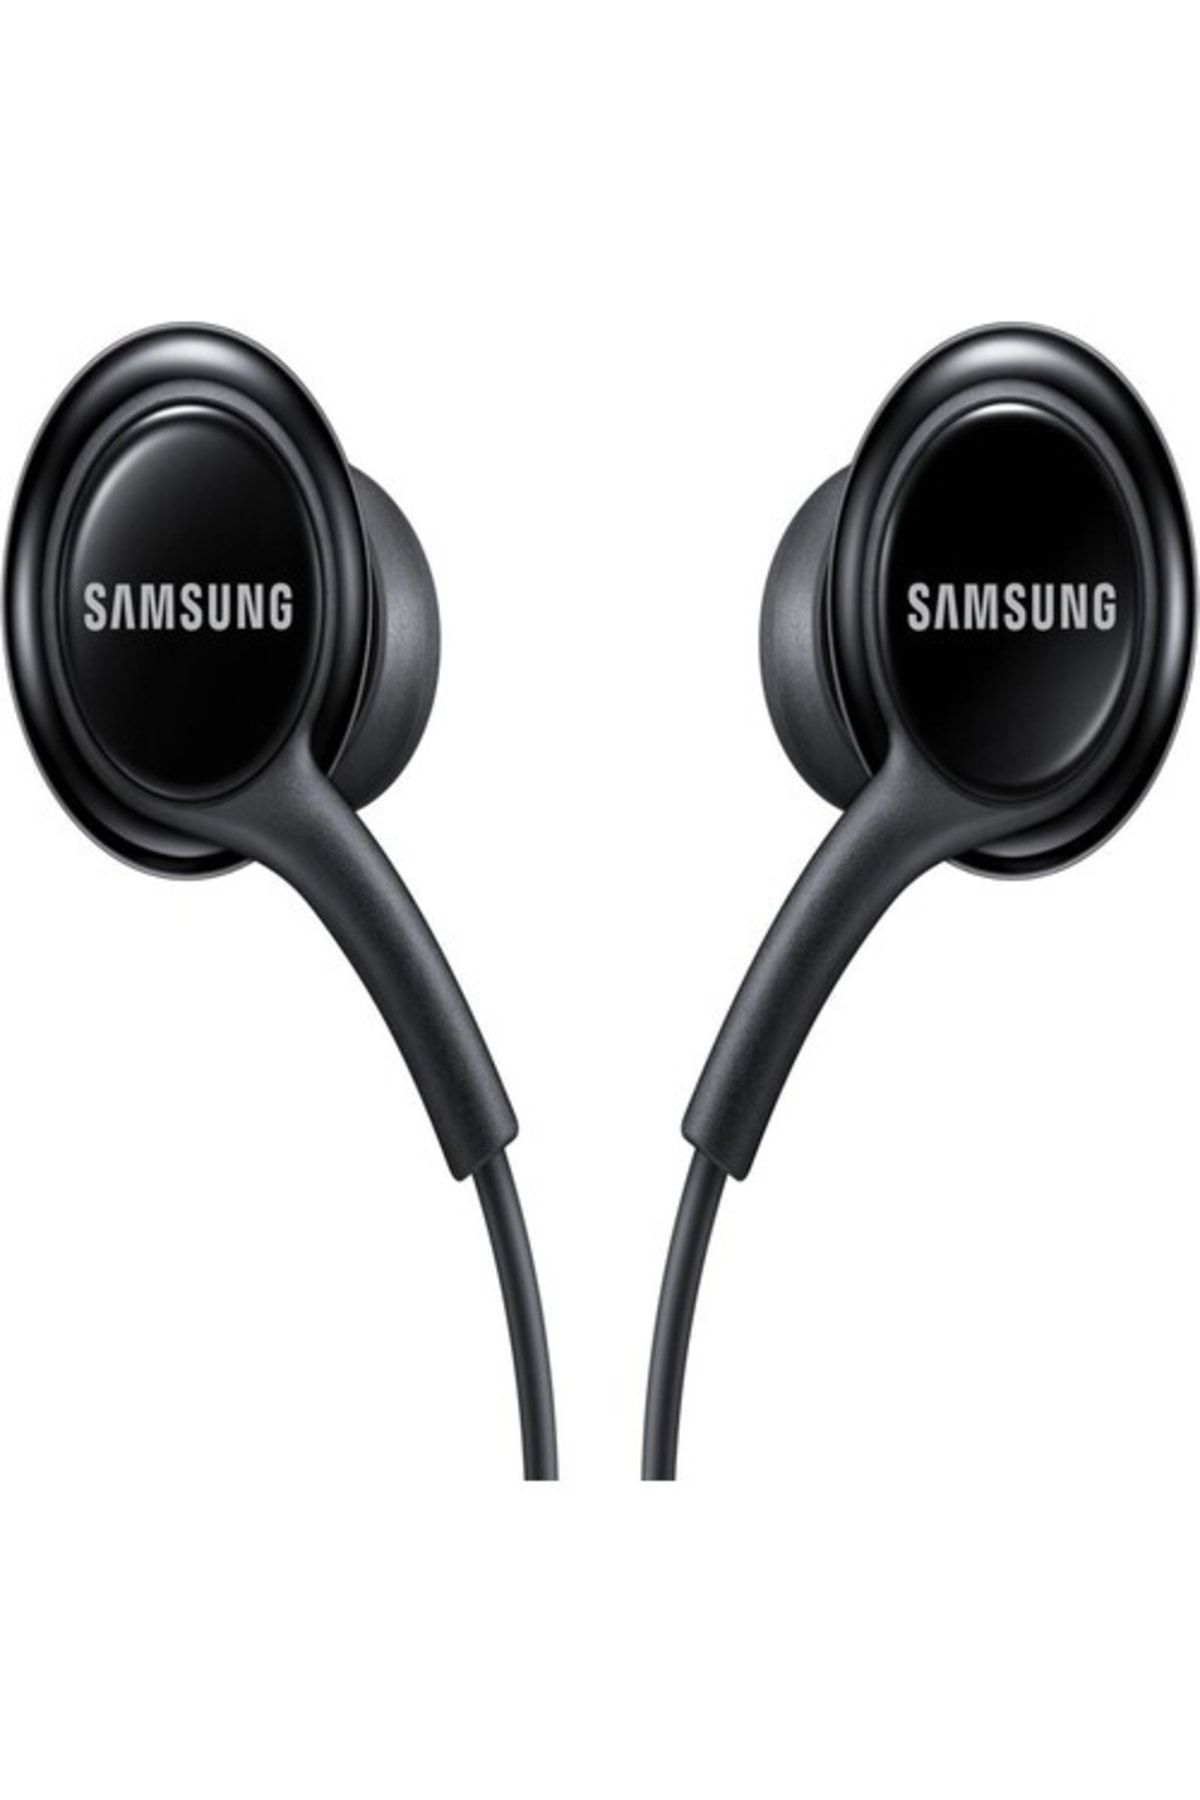 Samsung Eo-ıa500b 3.5mm Mikrofonlu Kablolu Kulaklık Siyah Türkiye Garantili